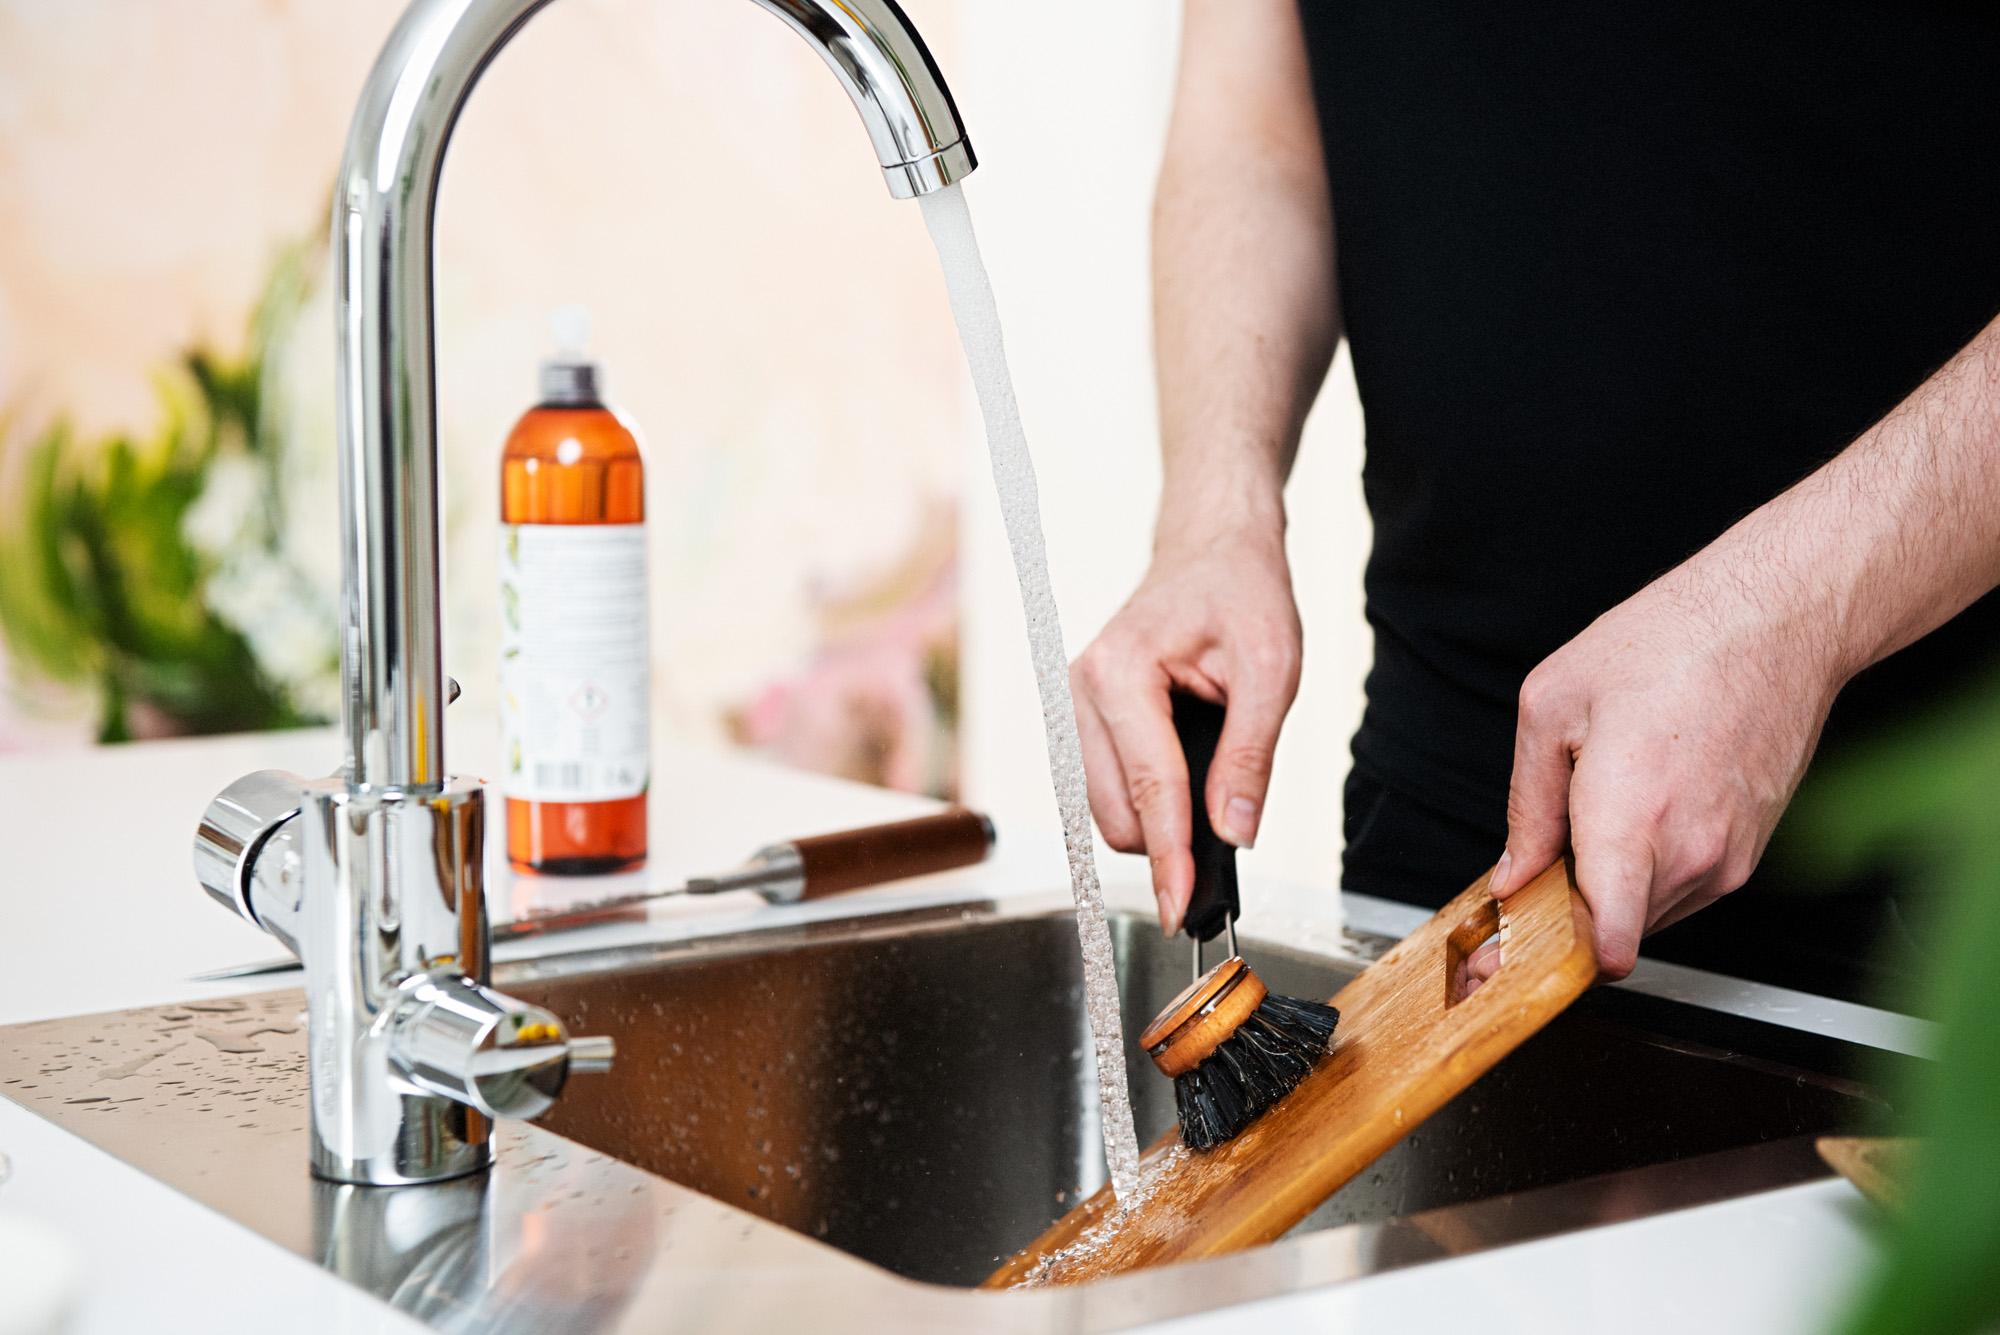 Säästeliäskin käsin tiskaaja kuluttaa vettä noin viisinkertaisen määrän nykyaikaiseen astianpesukoneeseen verrattuna.